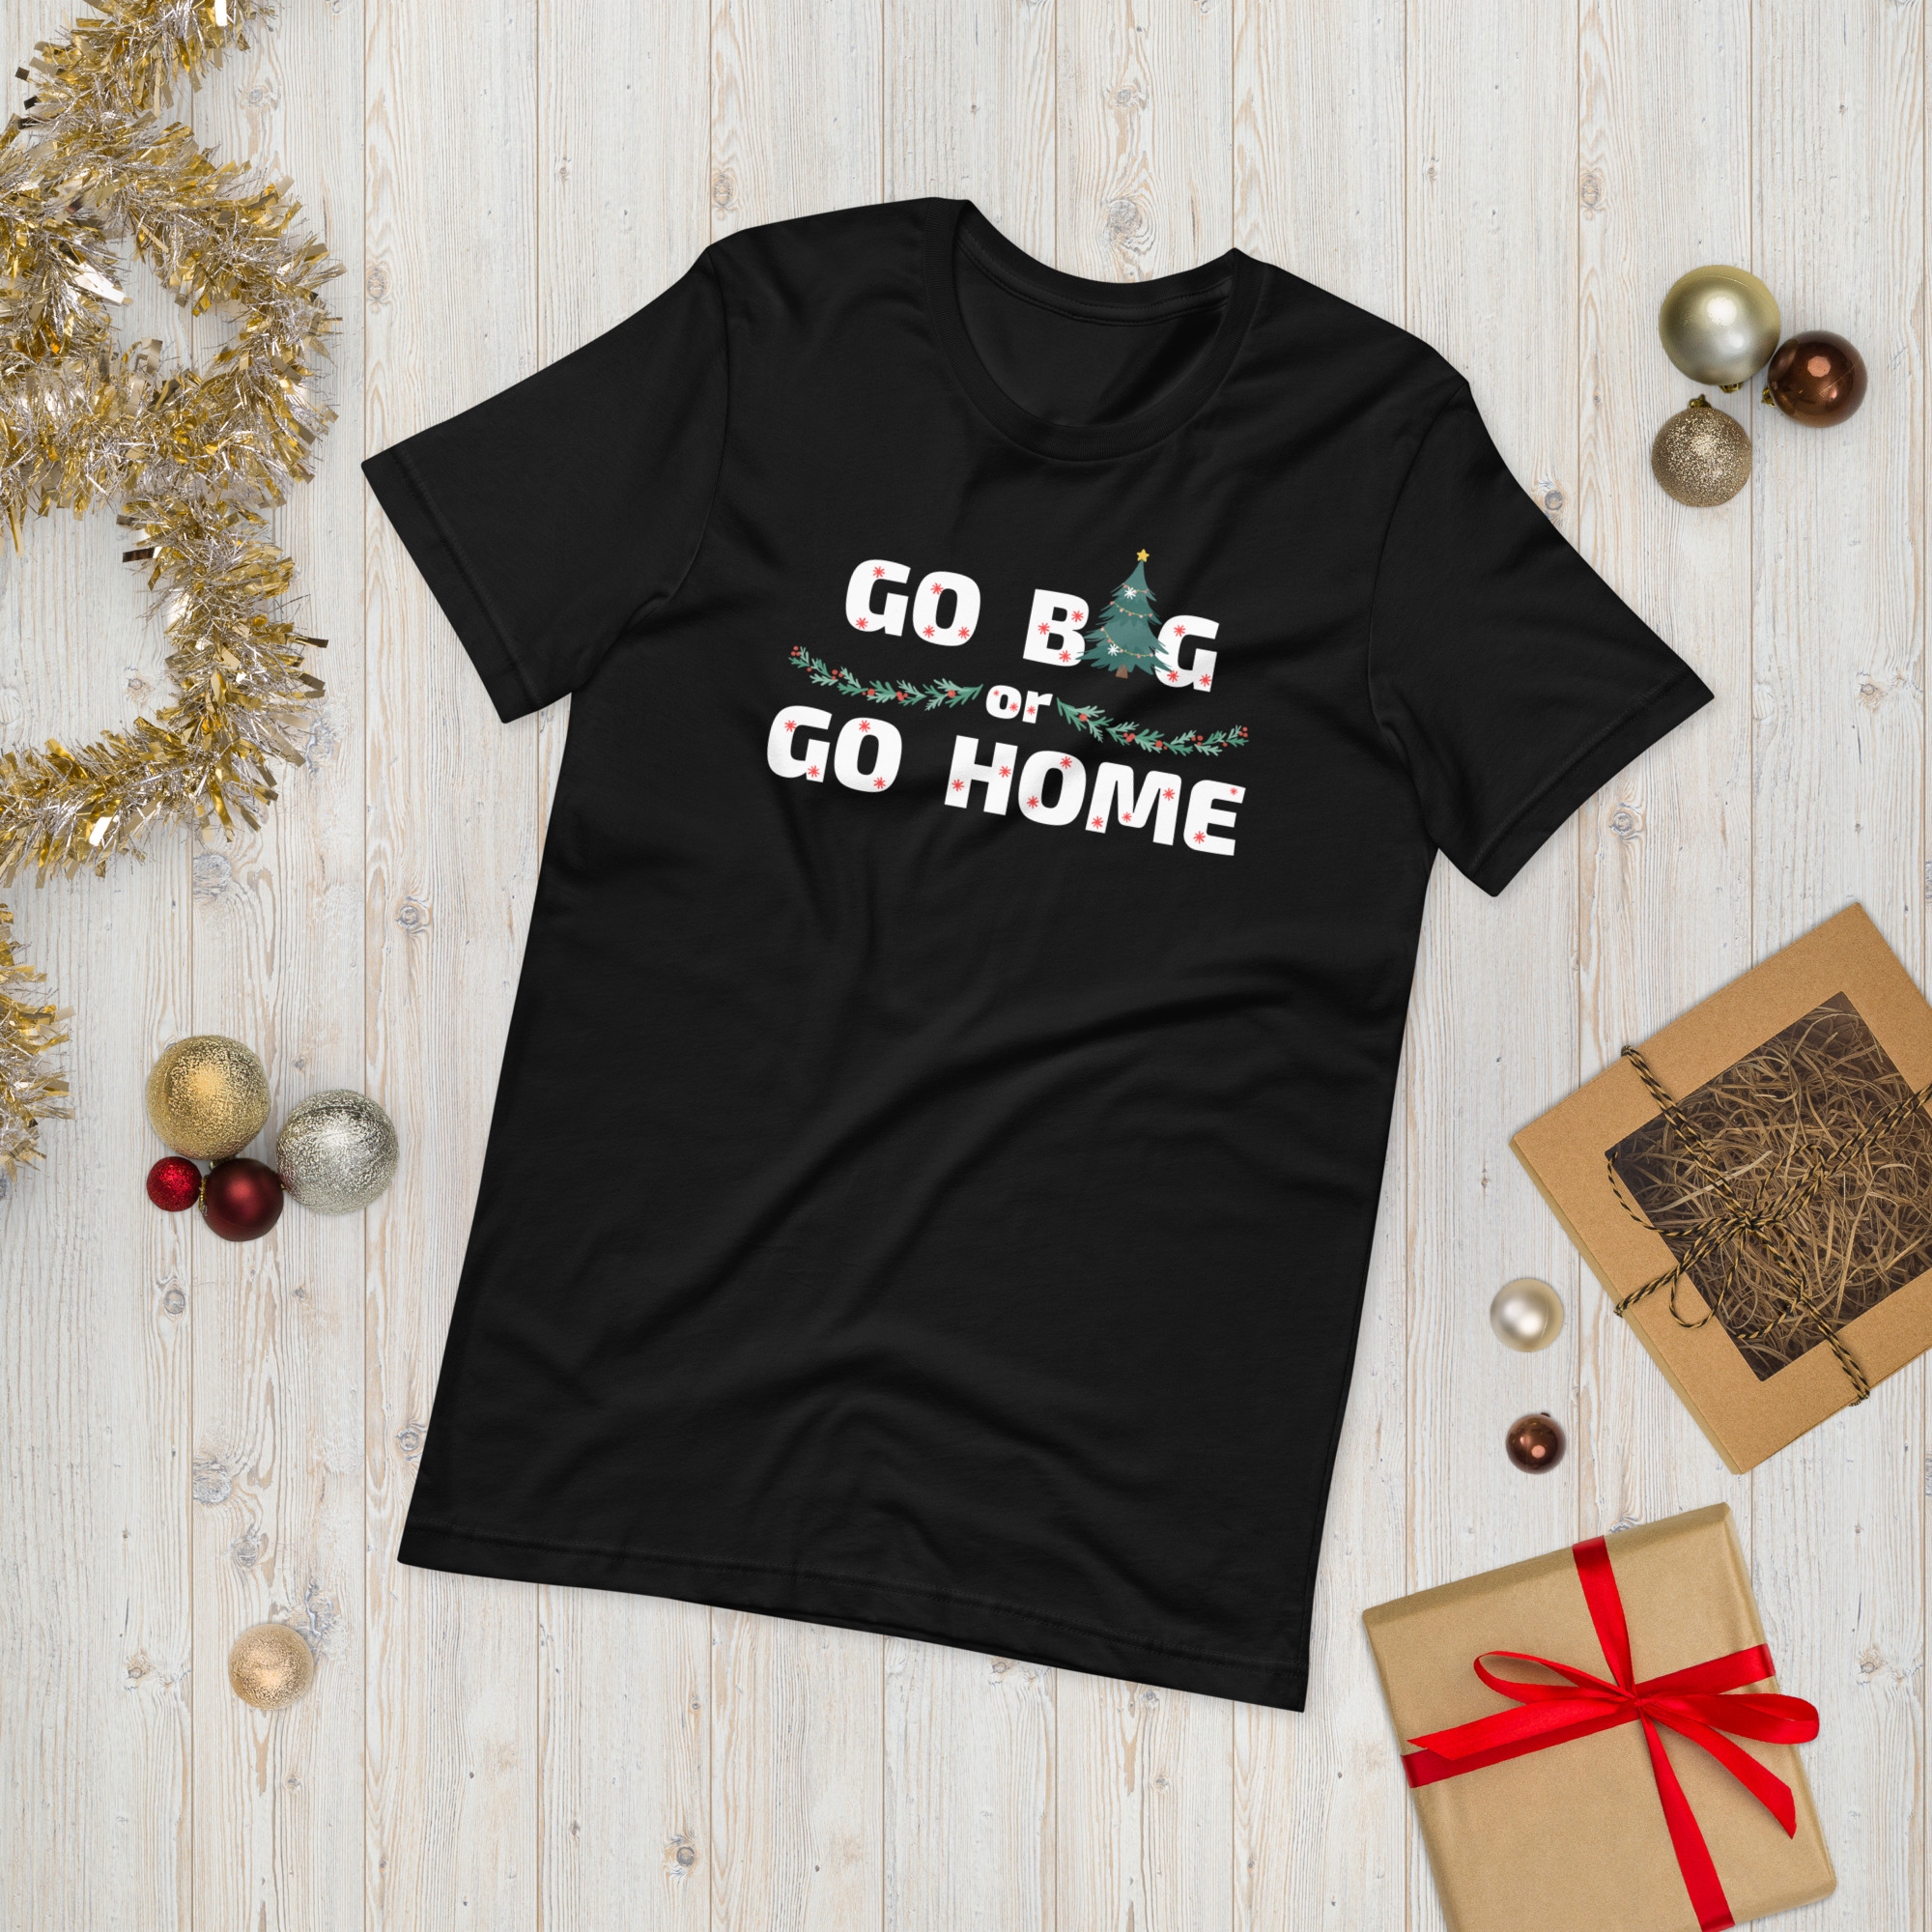 Go Big or Go Home T-shirt- black